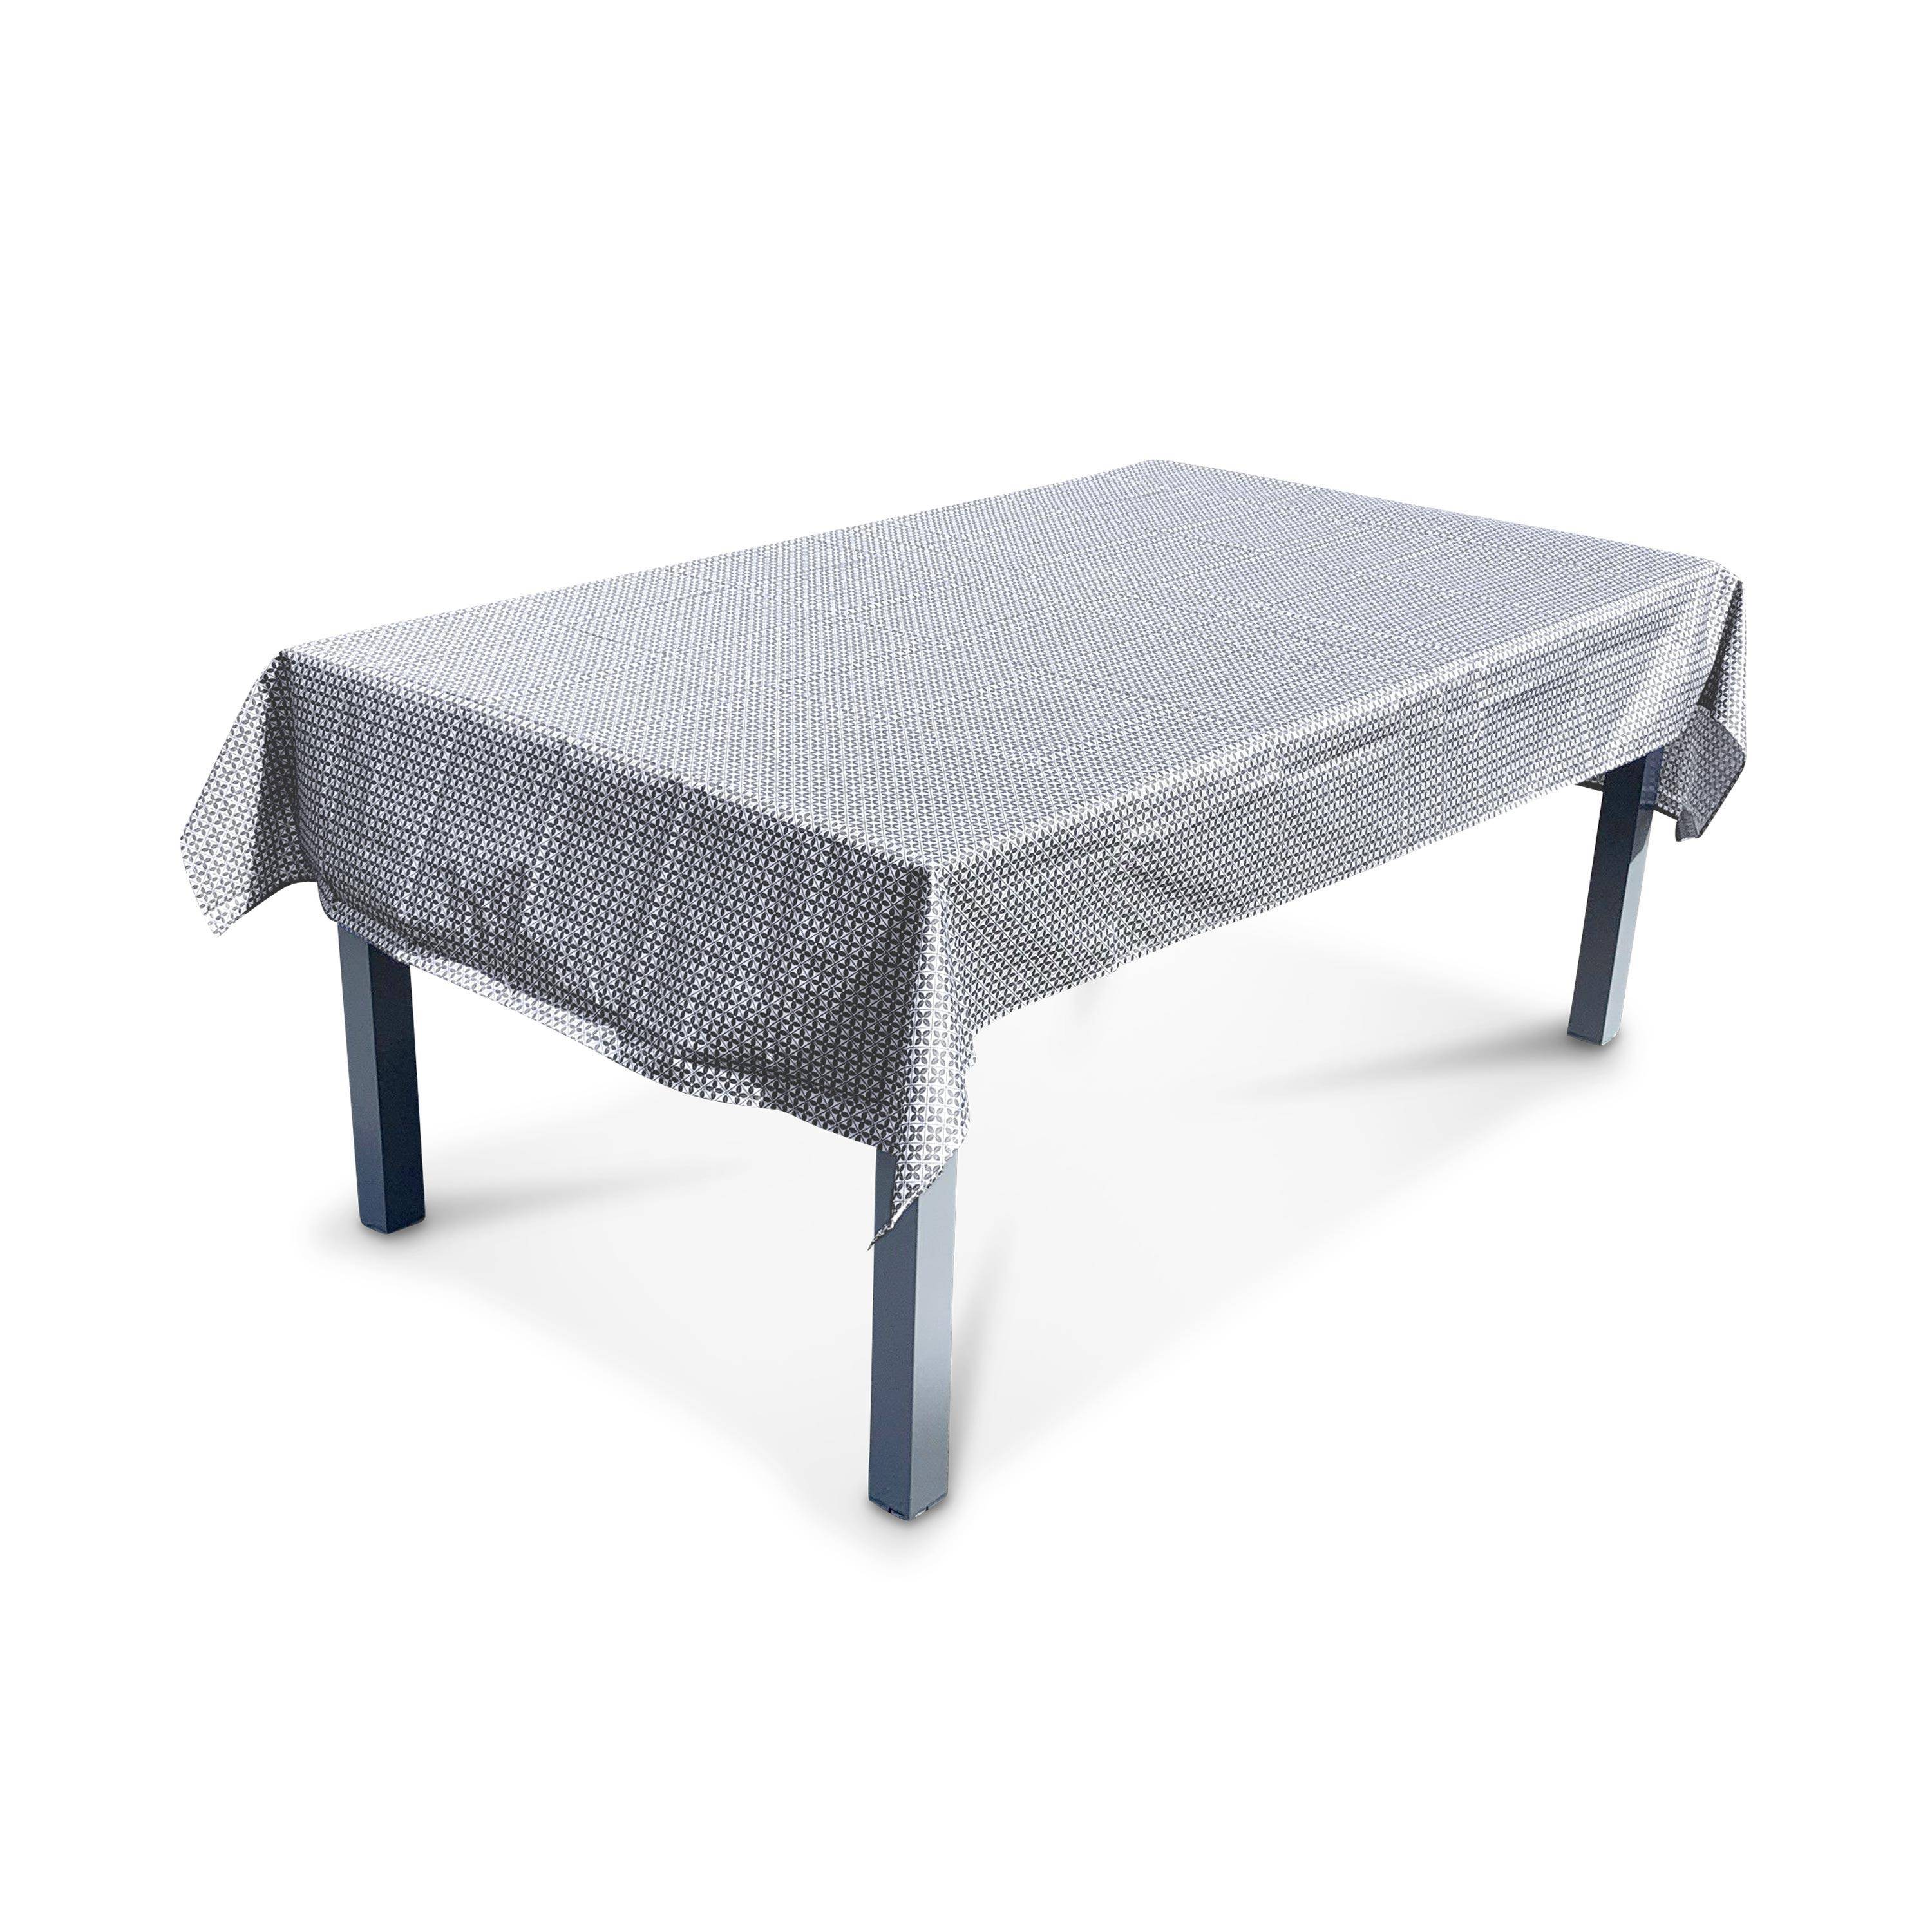 Kollektion HERITAGE - Outdoor-Tischdecke 140 x 240 cm Zementfliesendruck, 100% Polyester, schützt den Tisch, UV-Schutz, sommerlicher Stil,sweeek,Photo1